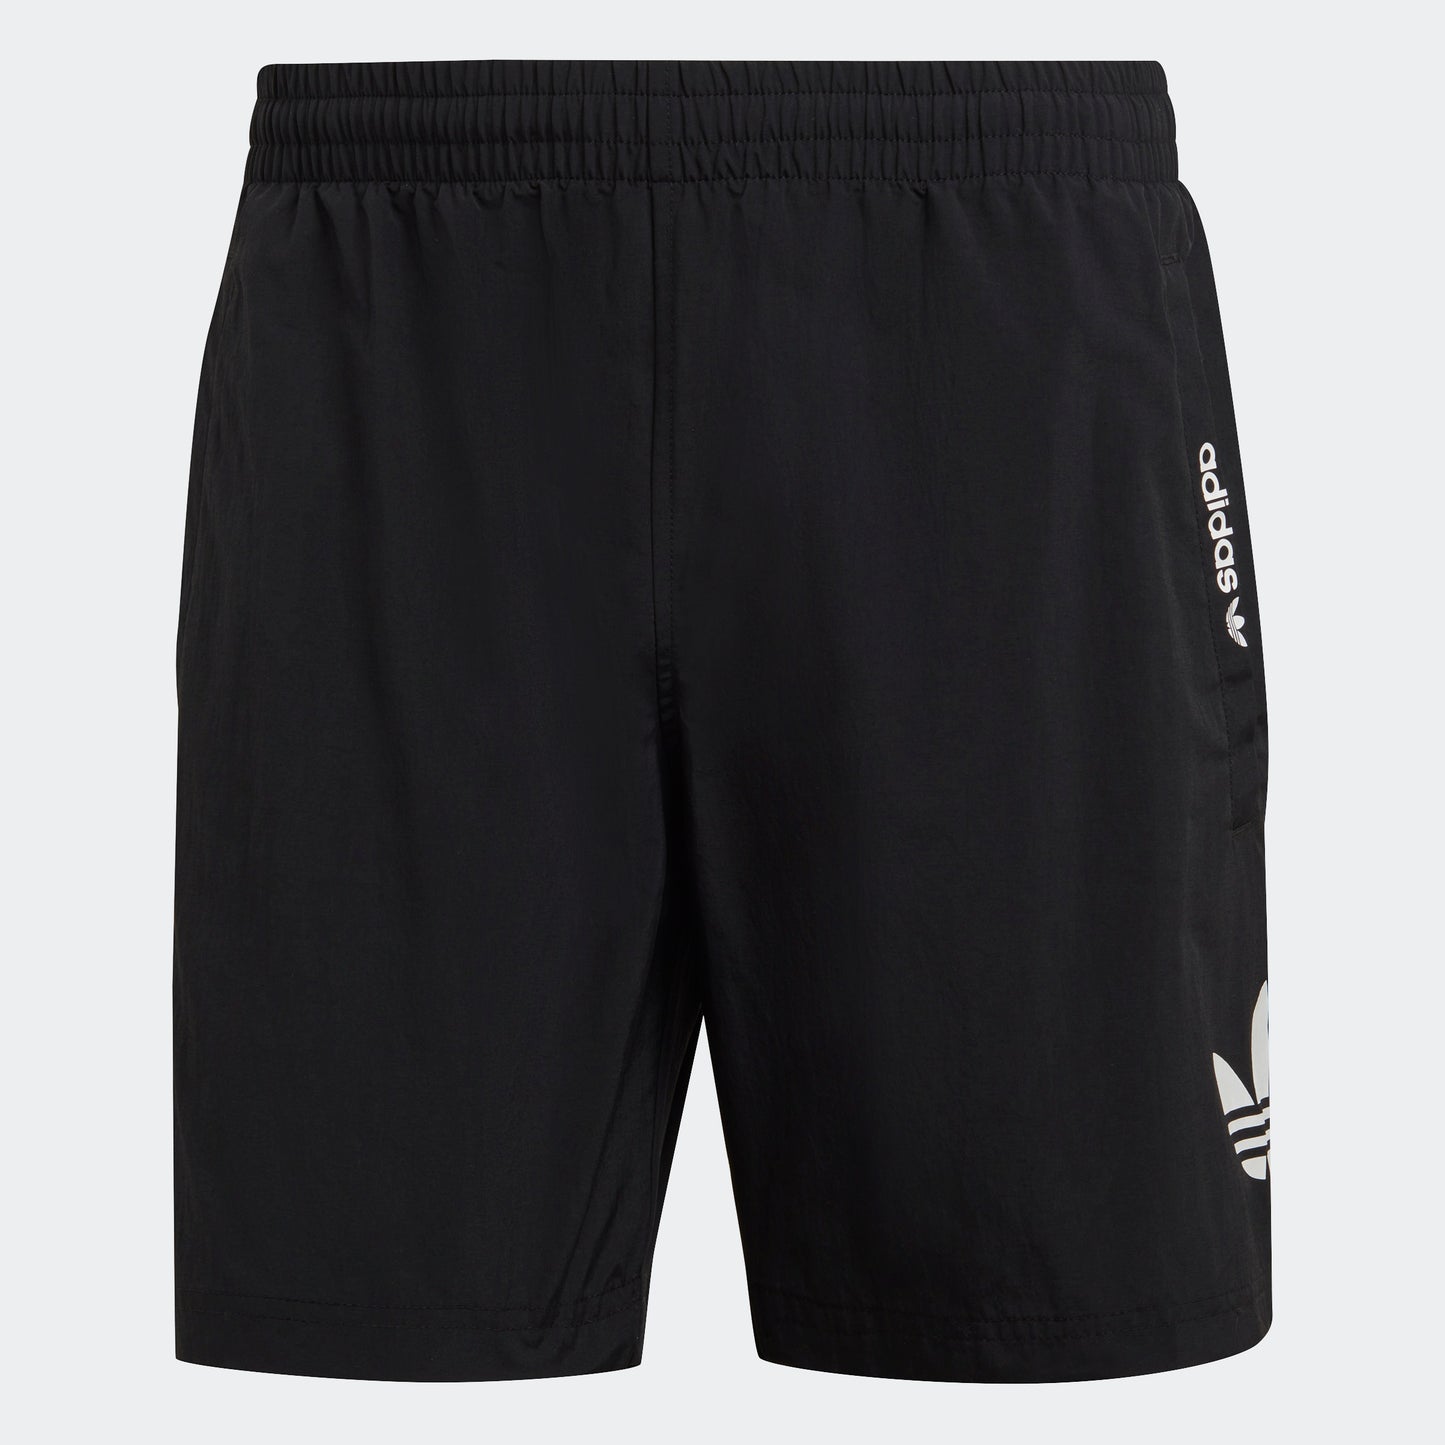 adidas Originals Essentials Trefoil Swim Shorts | Black | Men's